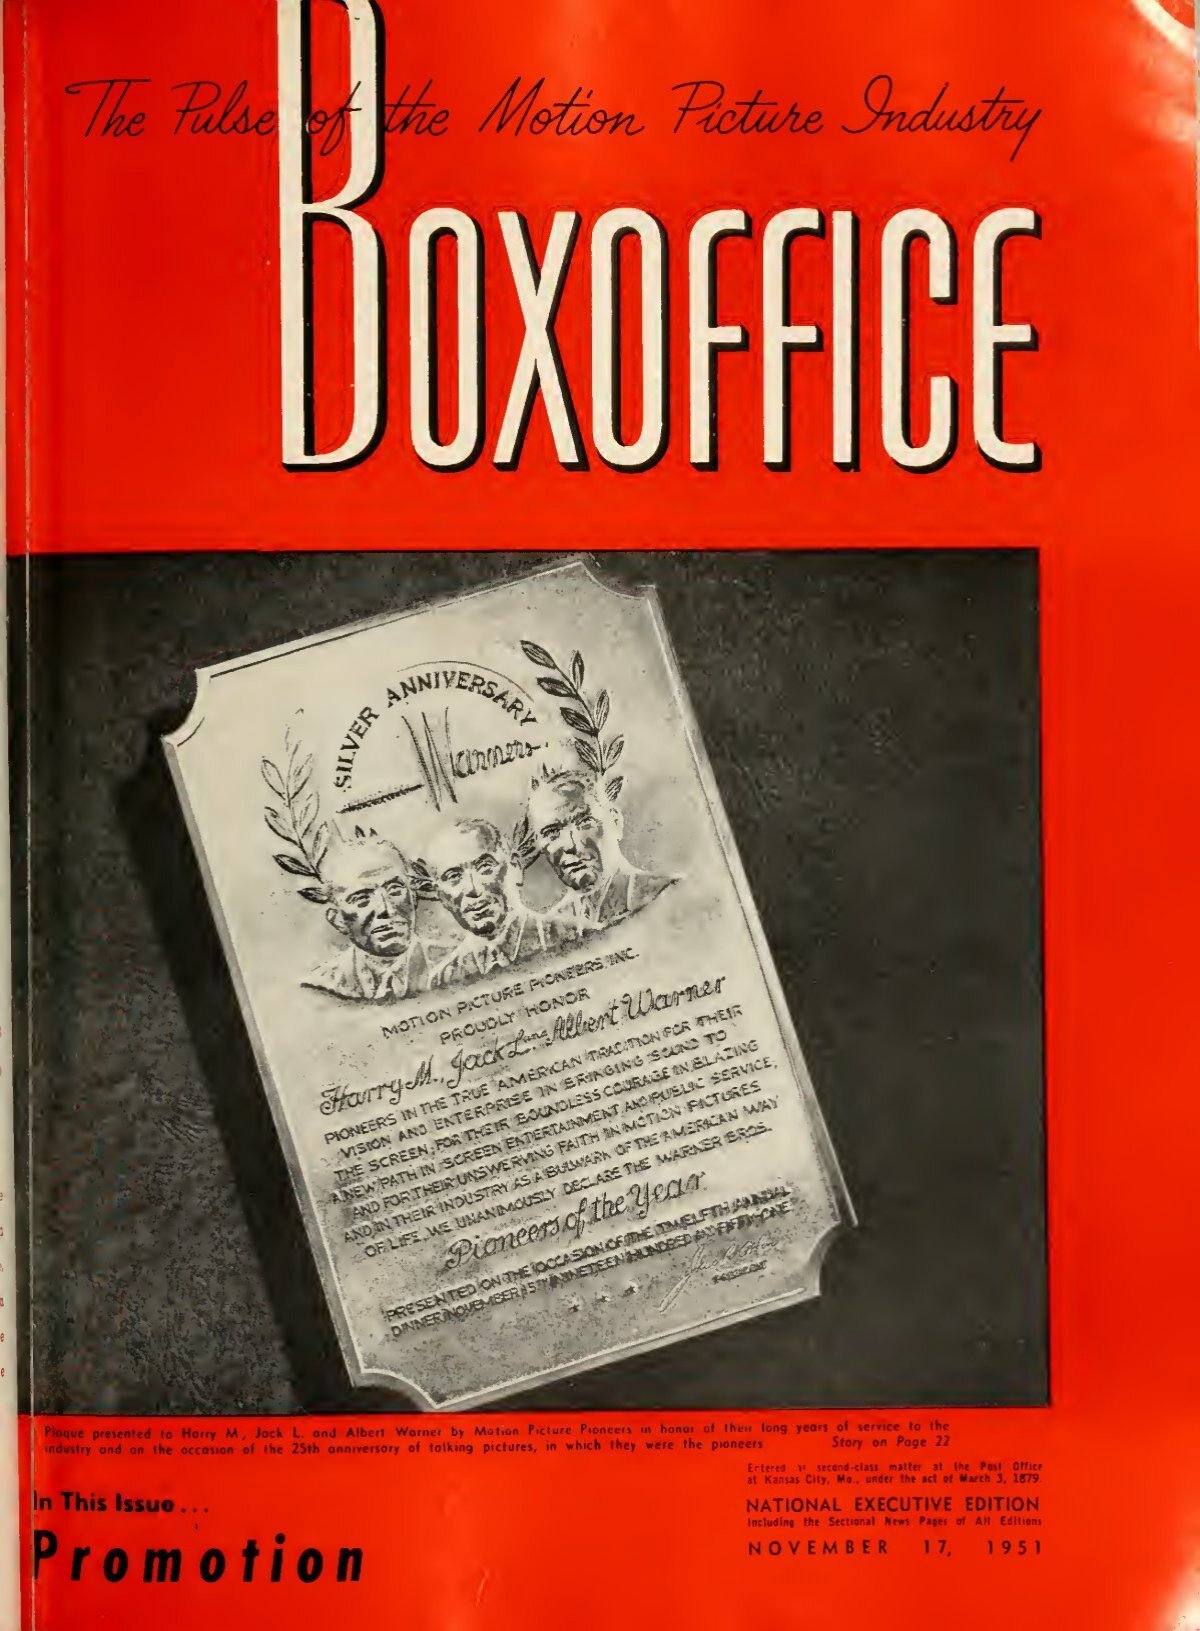 Boxoffice-November.17.1951